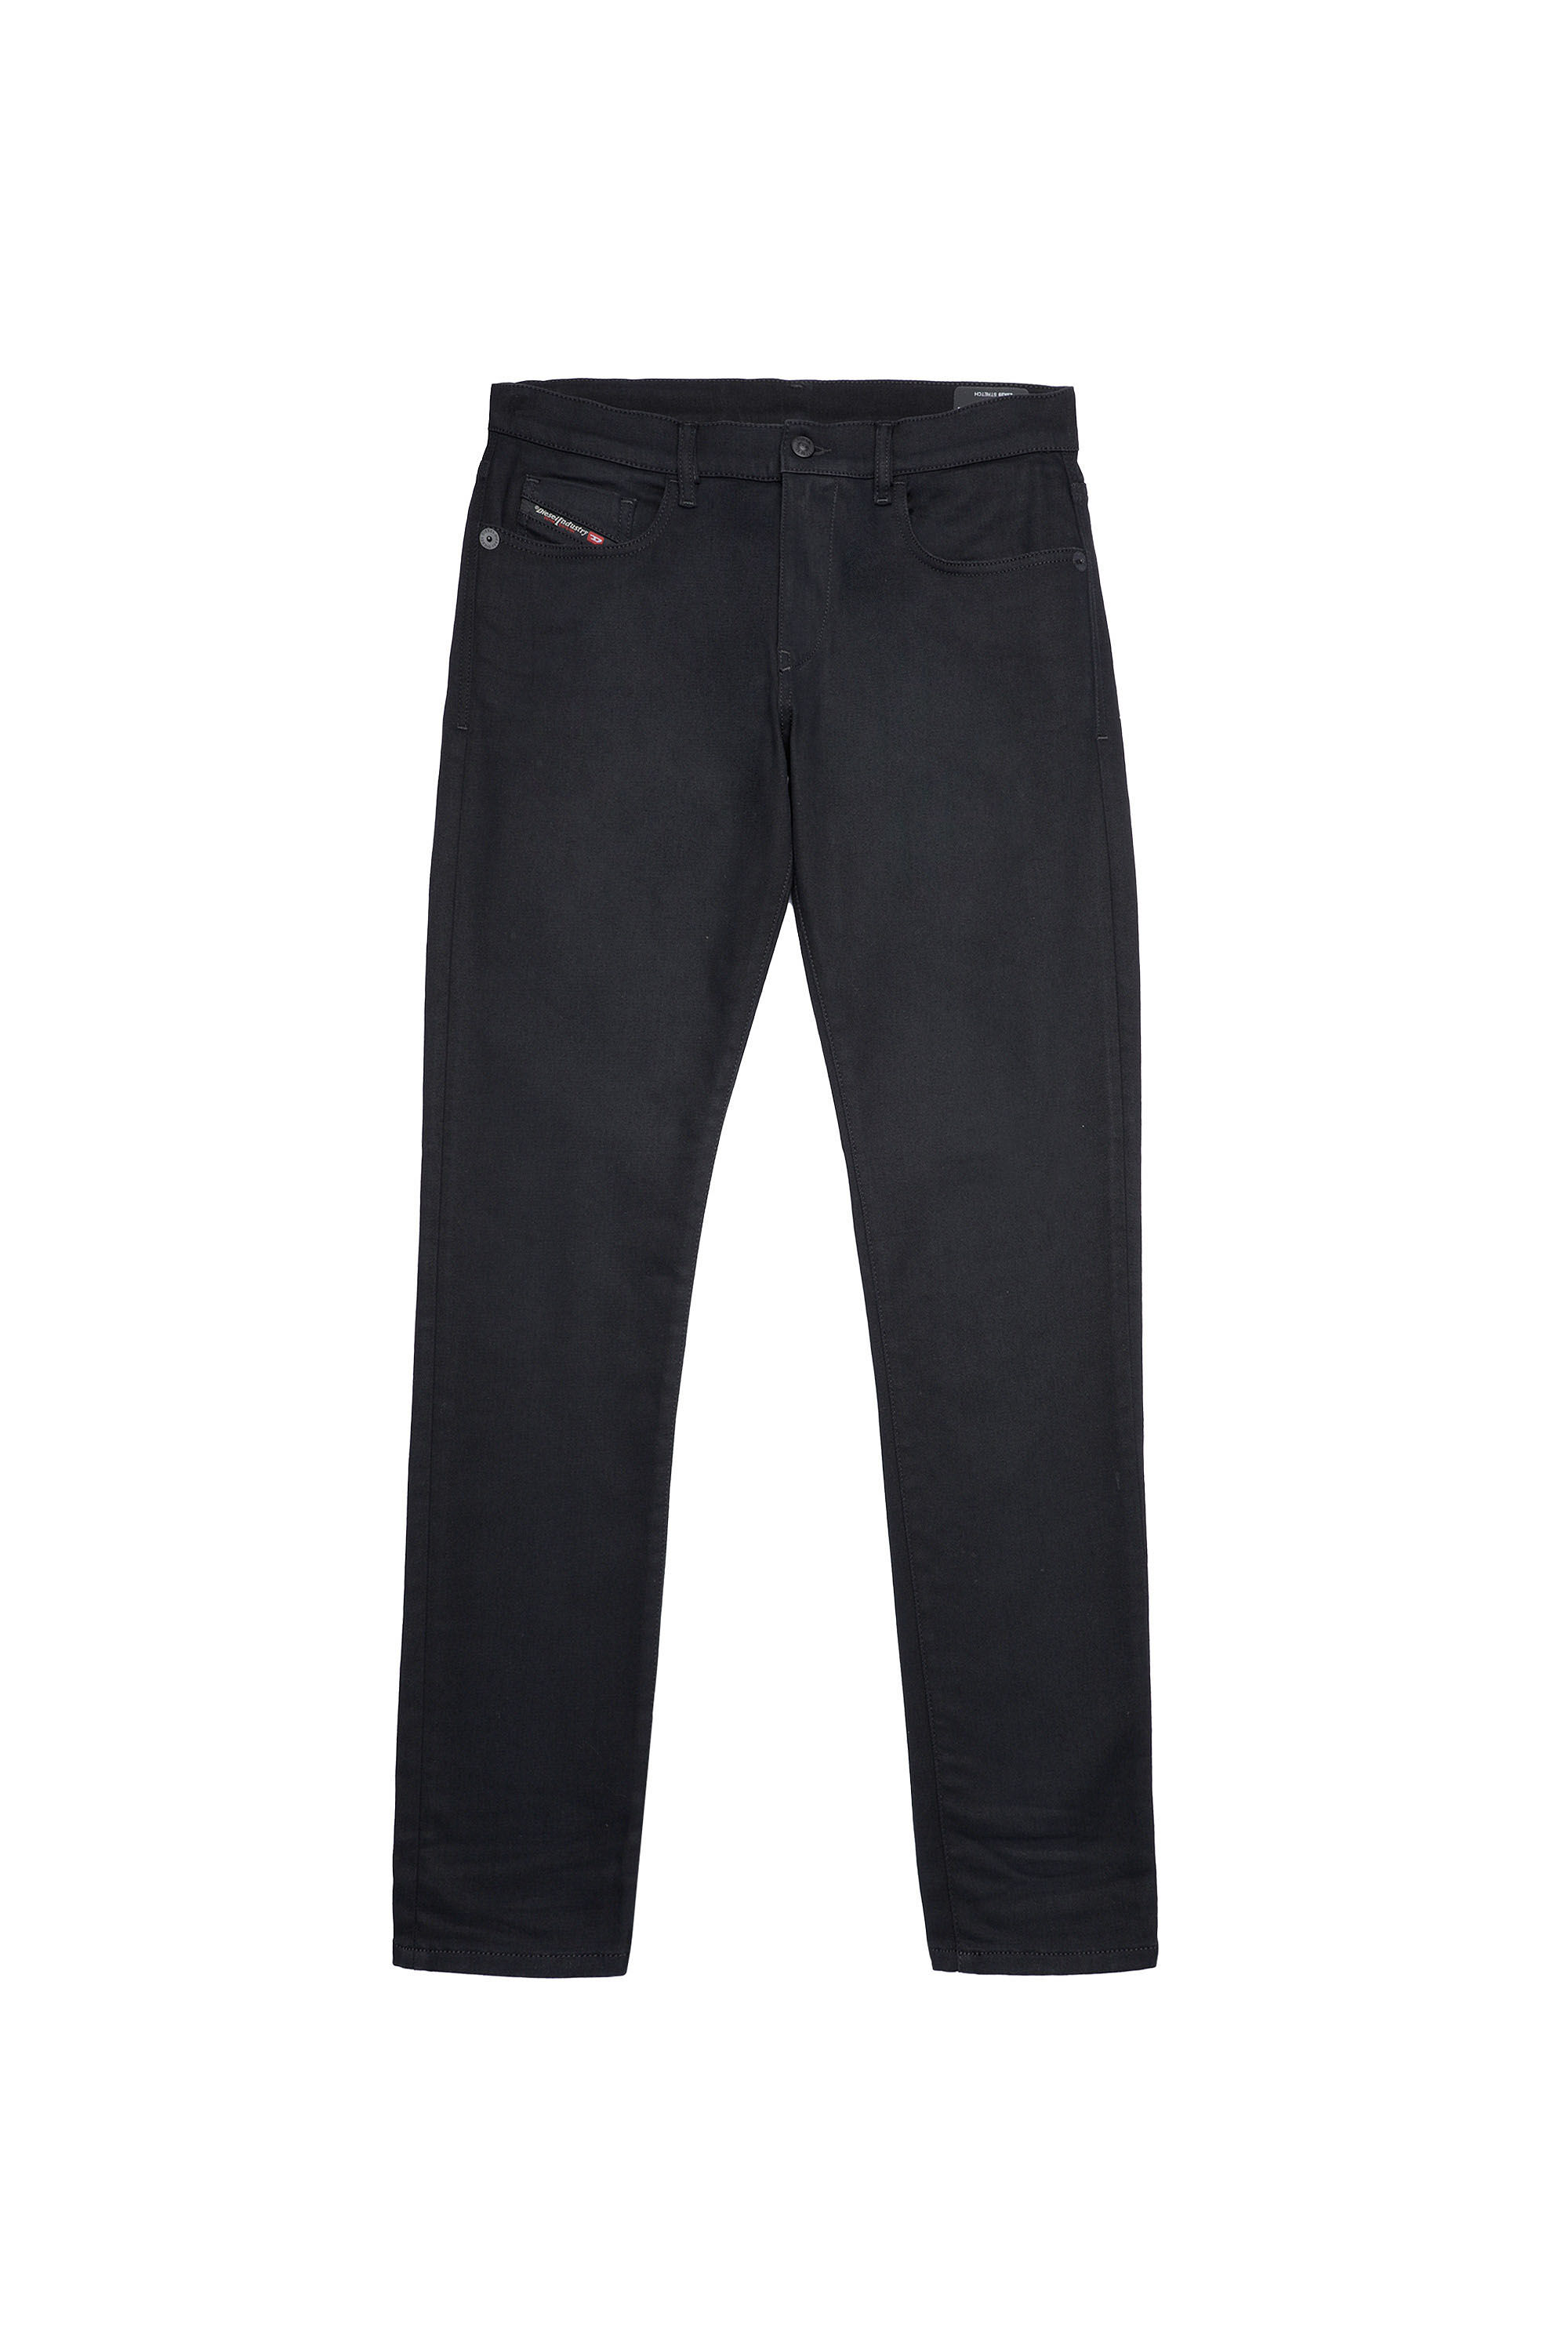 Diesel - D-Strukt JoggJeans® Z9A29 Slim, Black/Dark Grey - Image 2